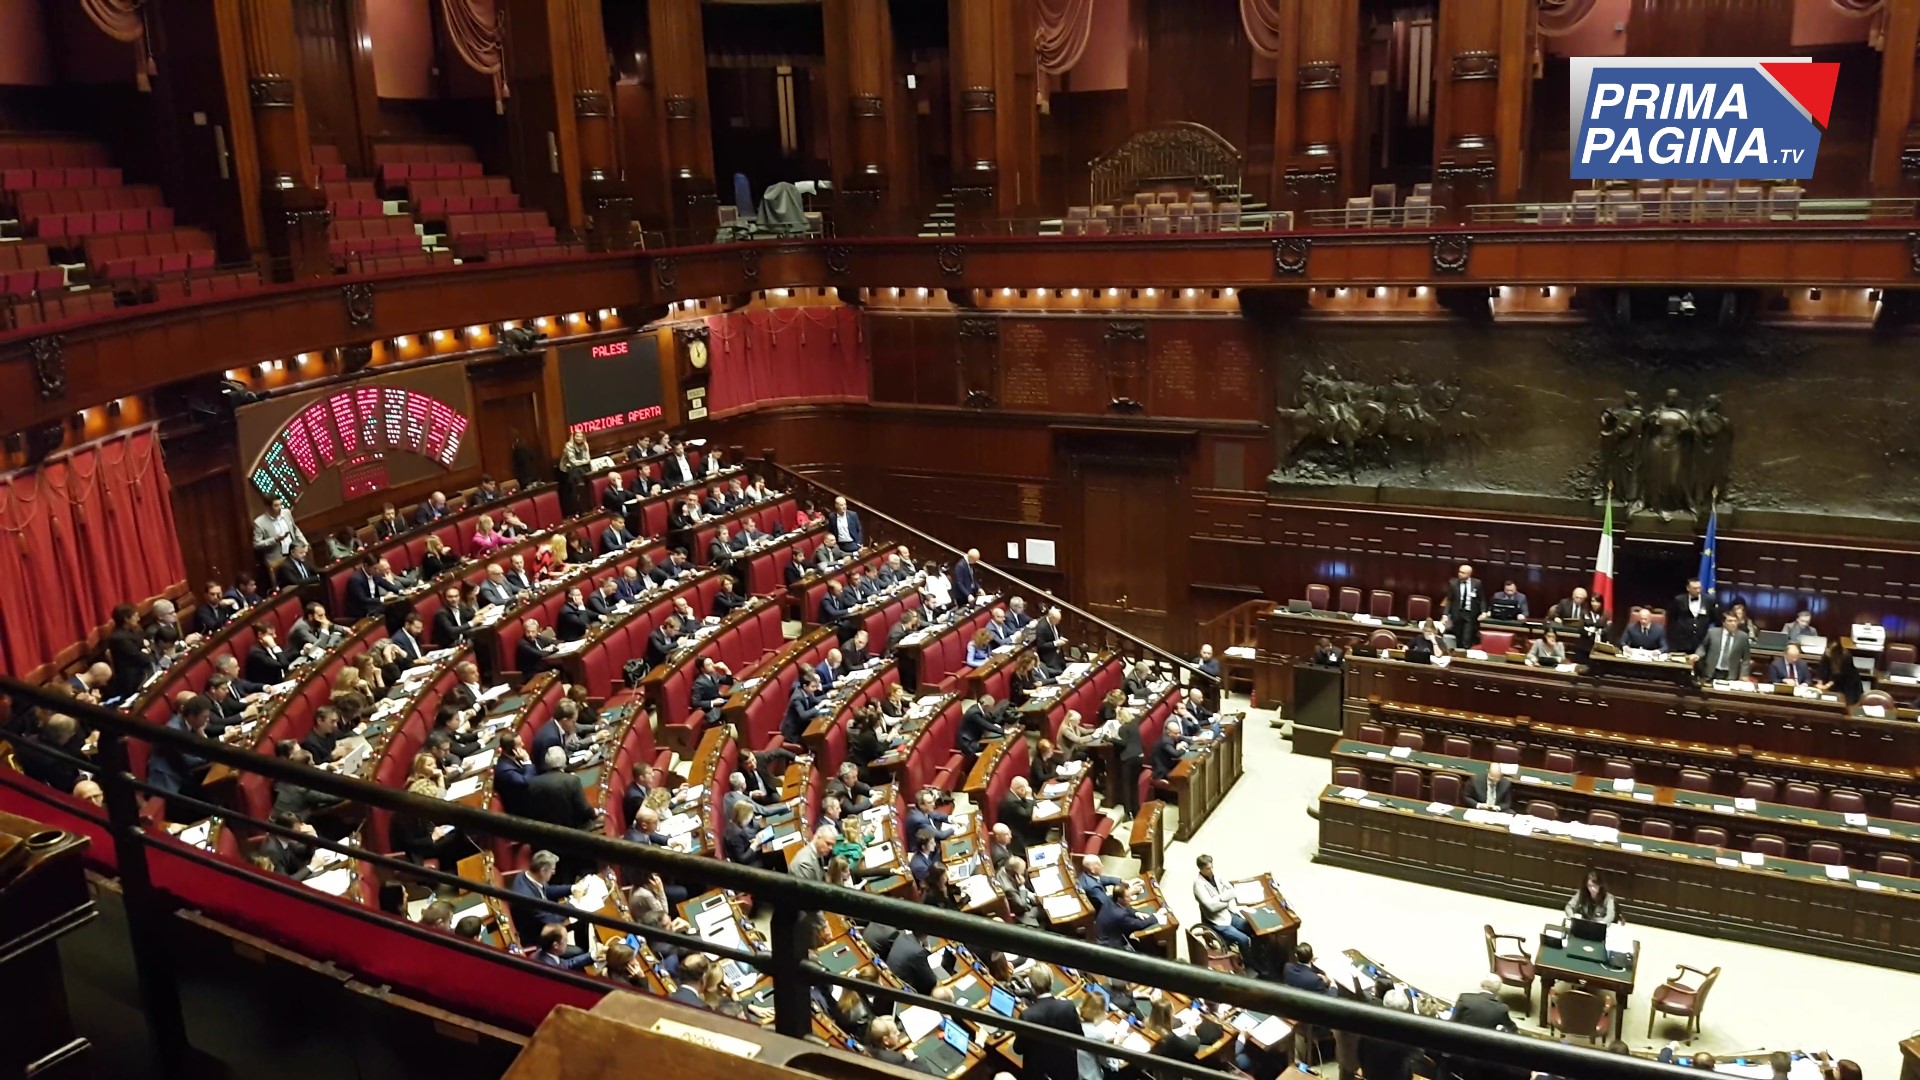 Taglio dei parlamentari: Maggioranza compatta con FI e FdI favorevoli. Pd e Leu votano contro